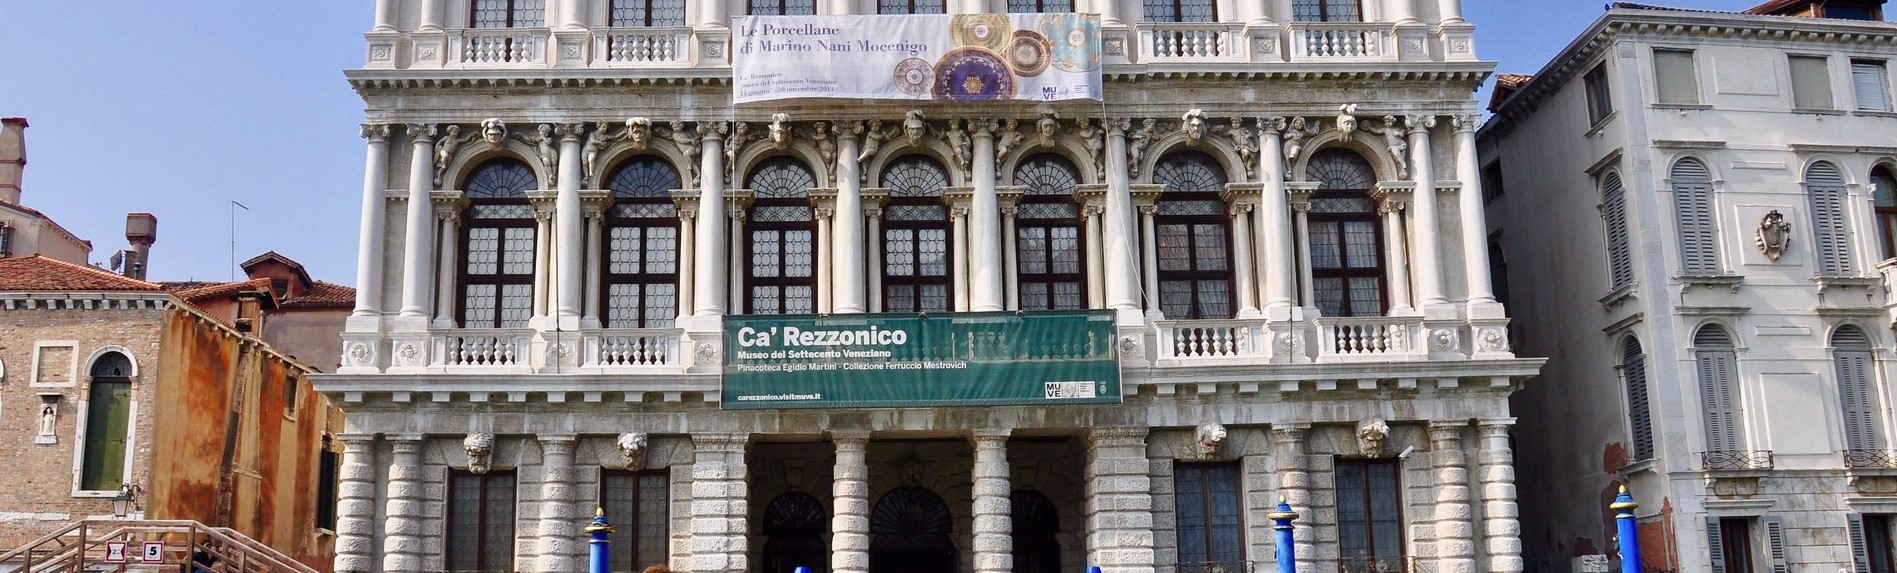 Ca’ Rezzonico Museum